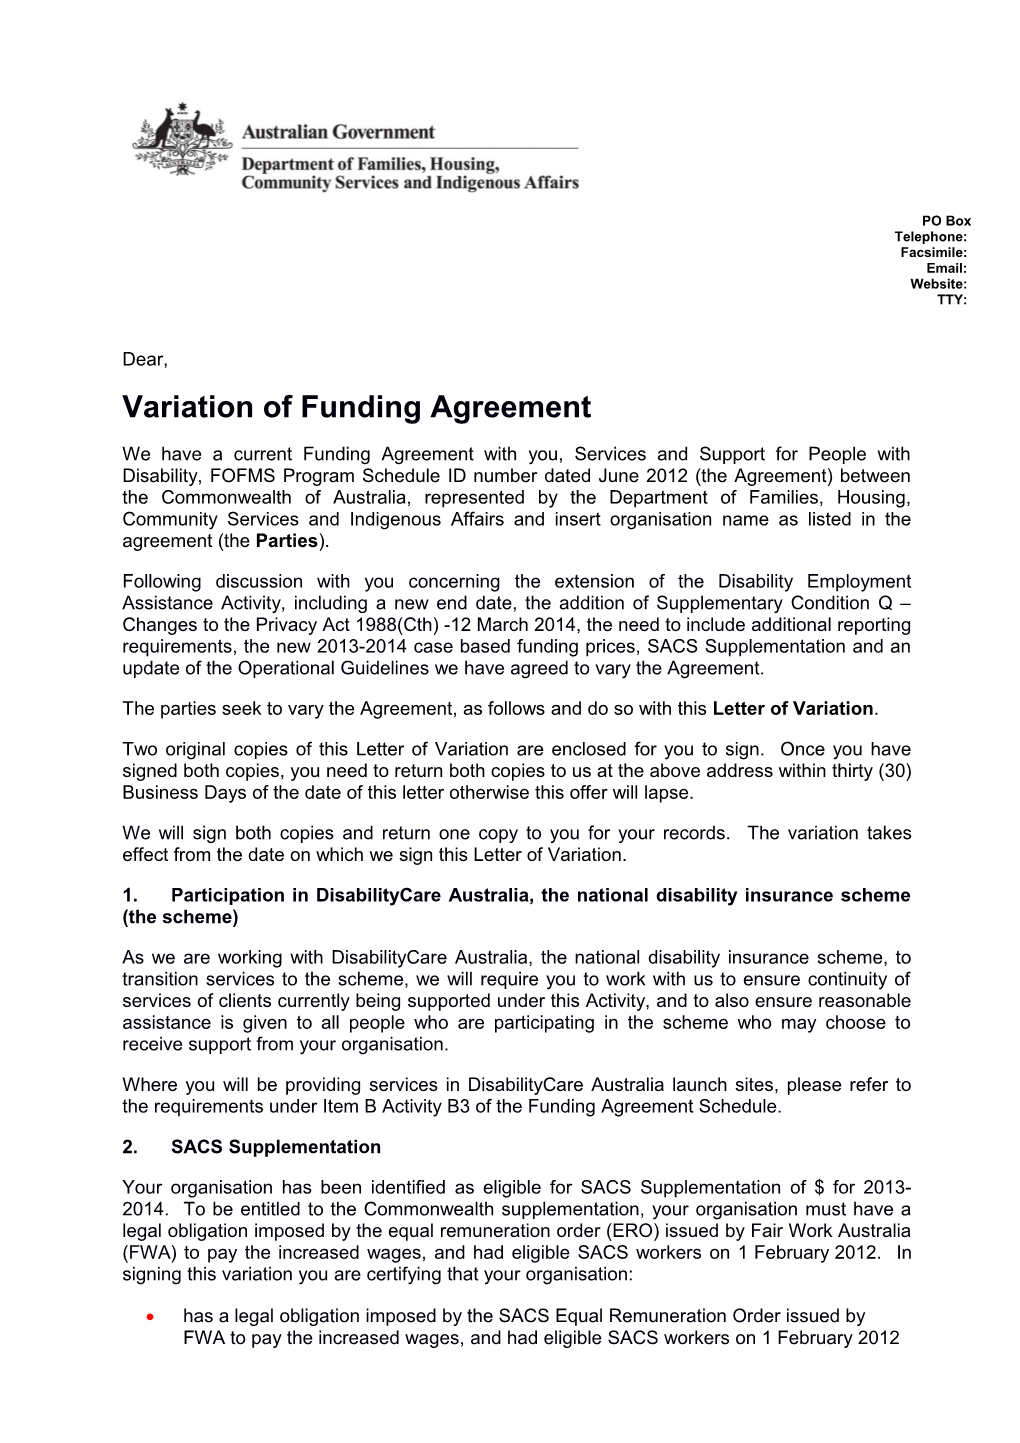 Variation of Funding Agreement Letter Sample